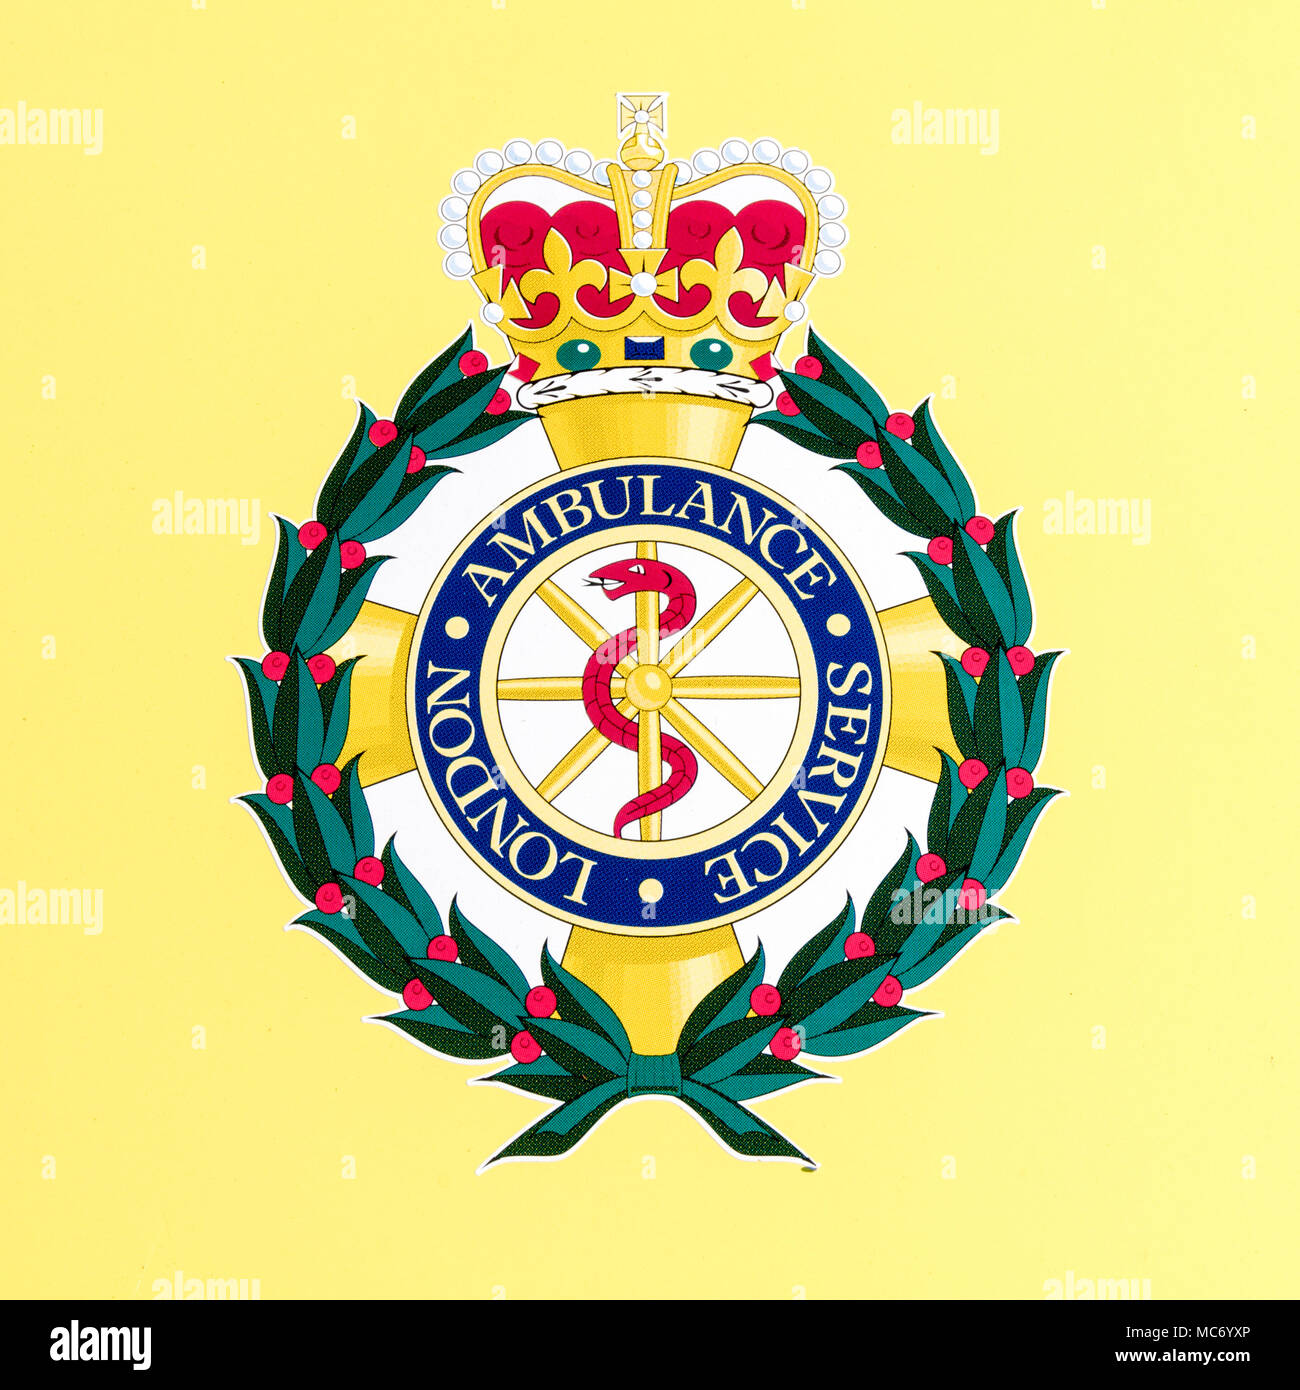 London ambulance service logo Stock Photo